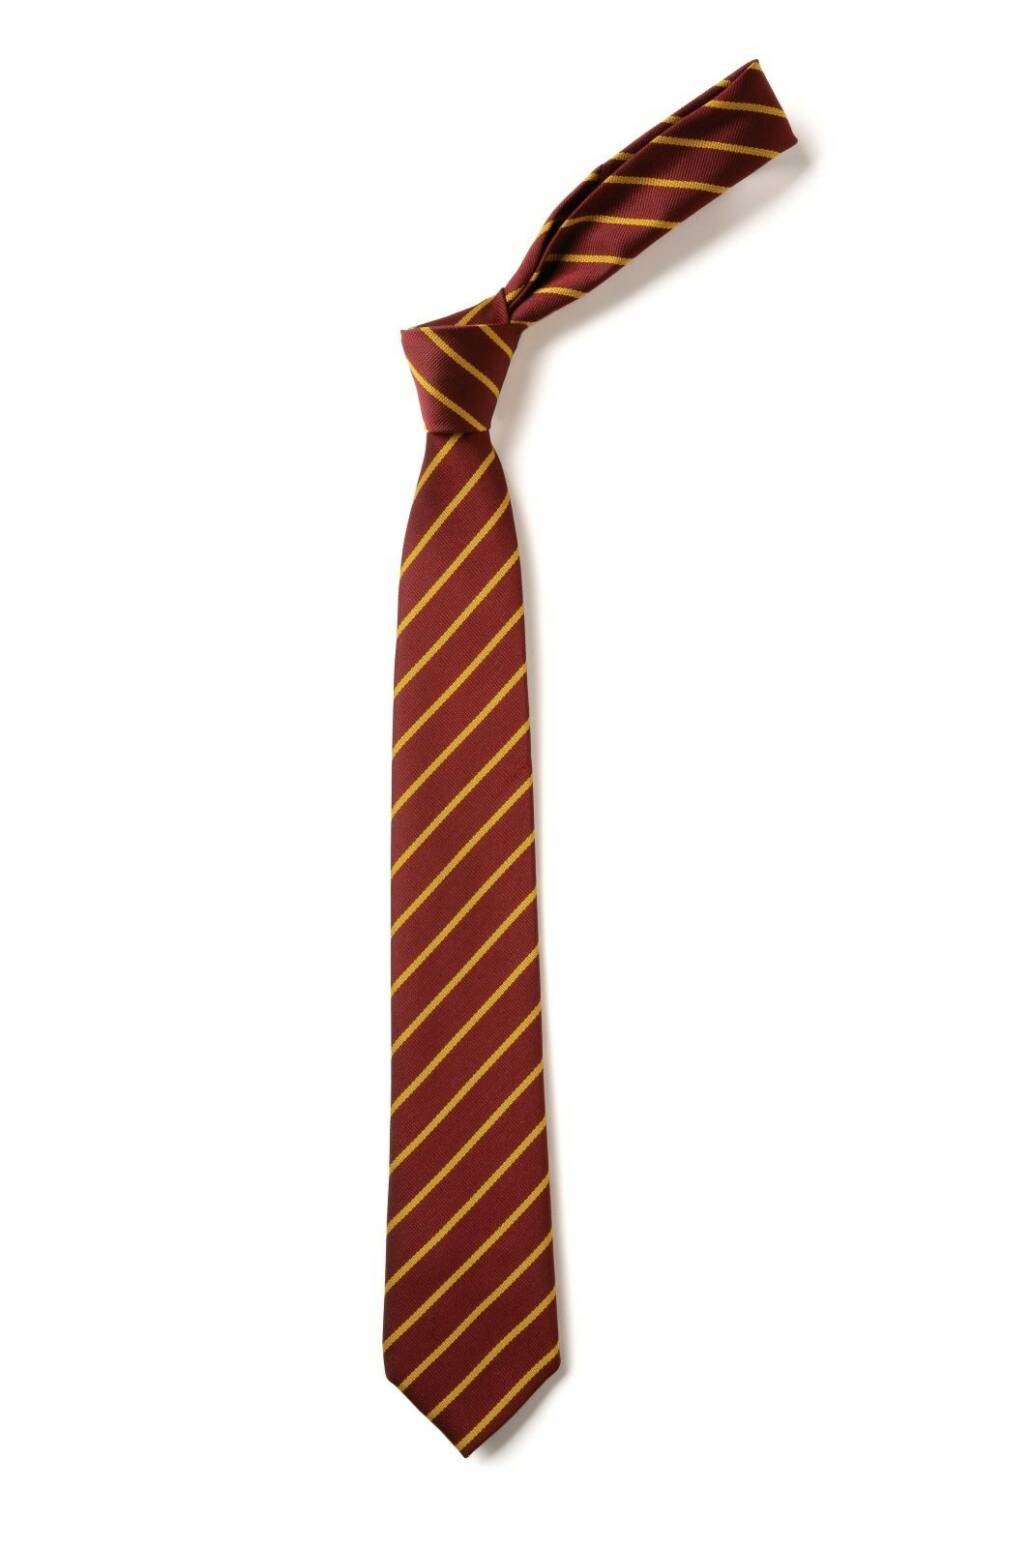 Maroon/Gold Striped School Tie